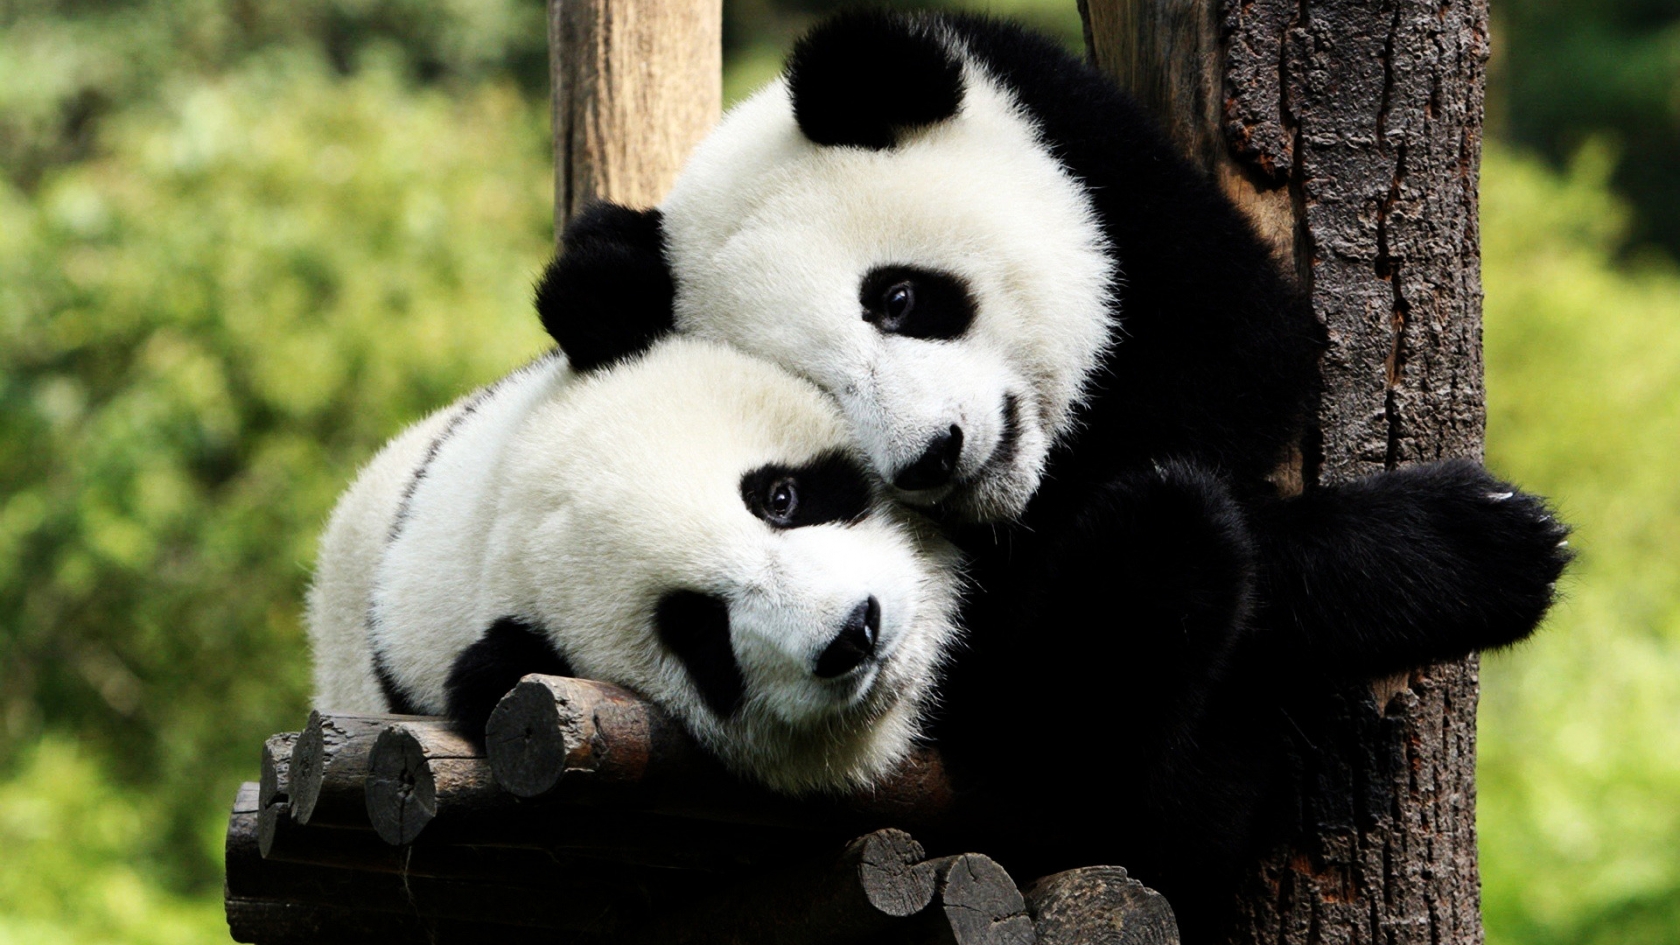 Panda Bears in Love for 1680 x 945 HDTV resolution